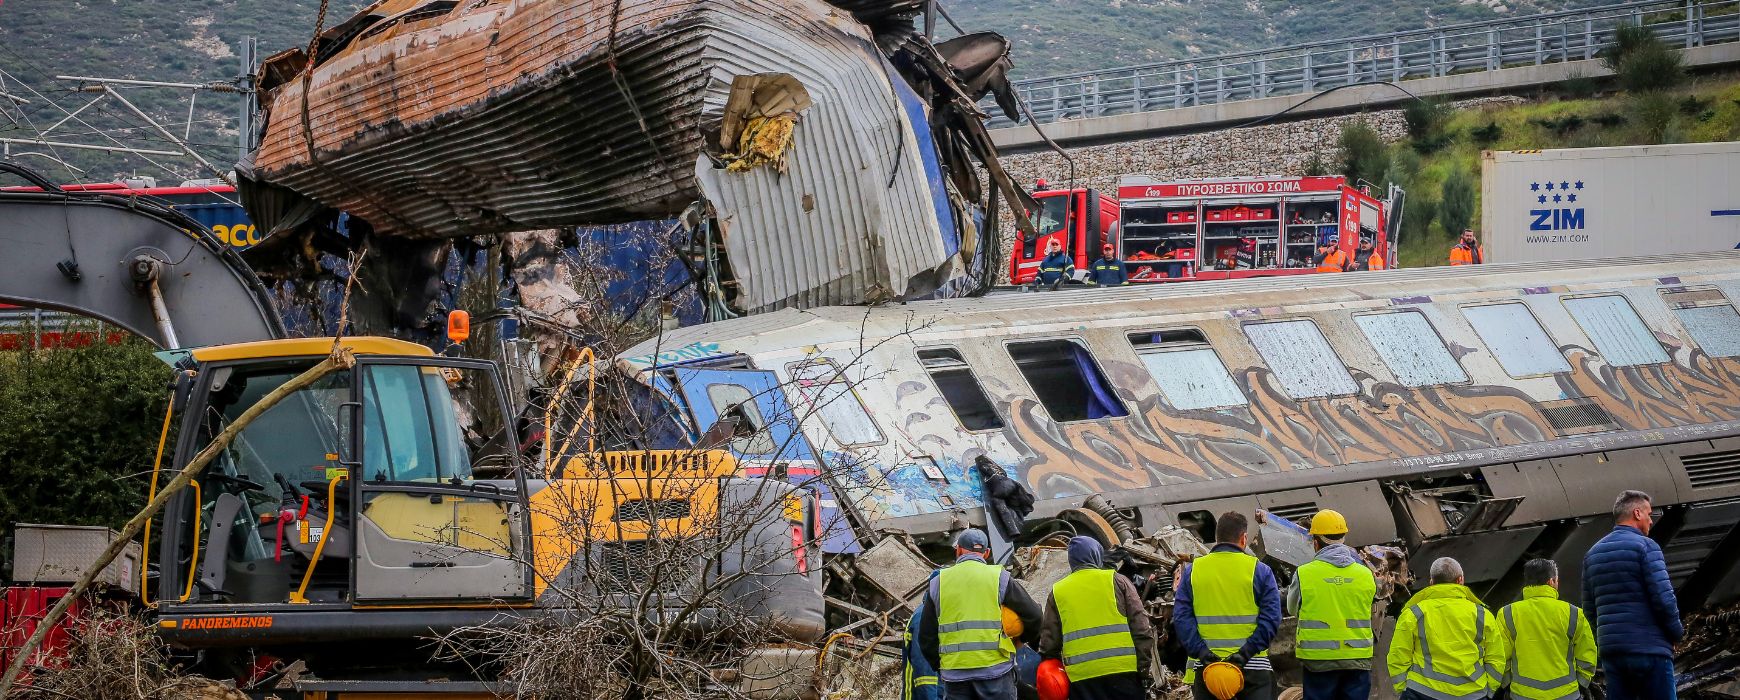 Δυστύχημα στα Τέμπη: Στους 46 οι νεκροί – Ανασύρθηκαν 7 απανθρακωμένα πτώματα από το βαγόνι – εστιατόριο (photos/videos)